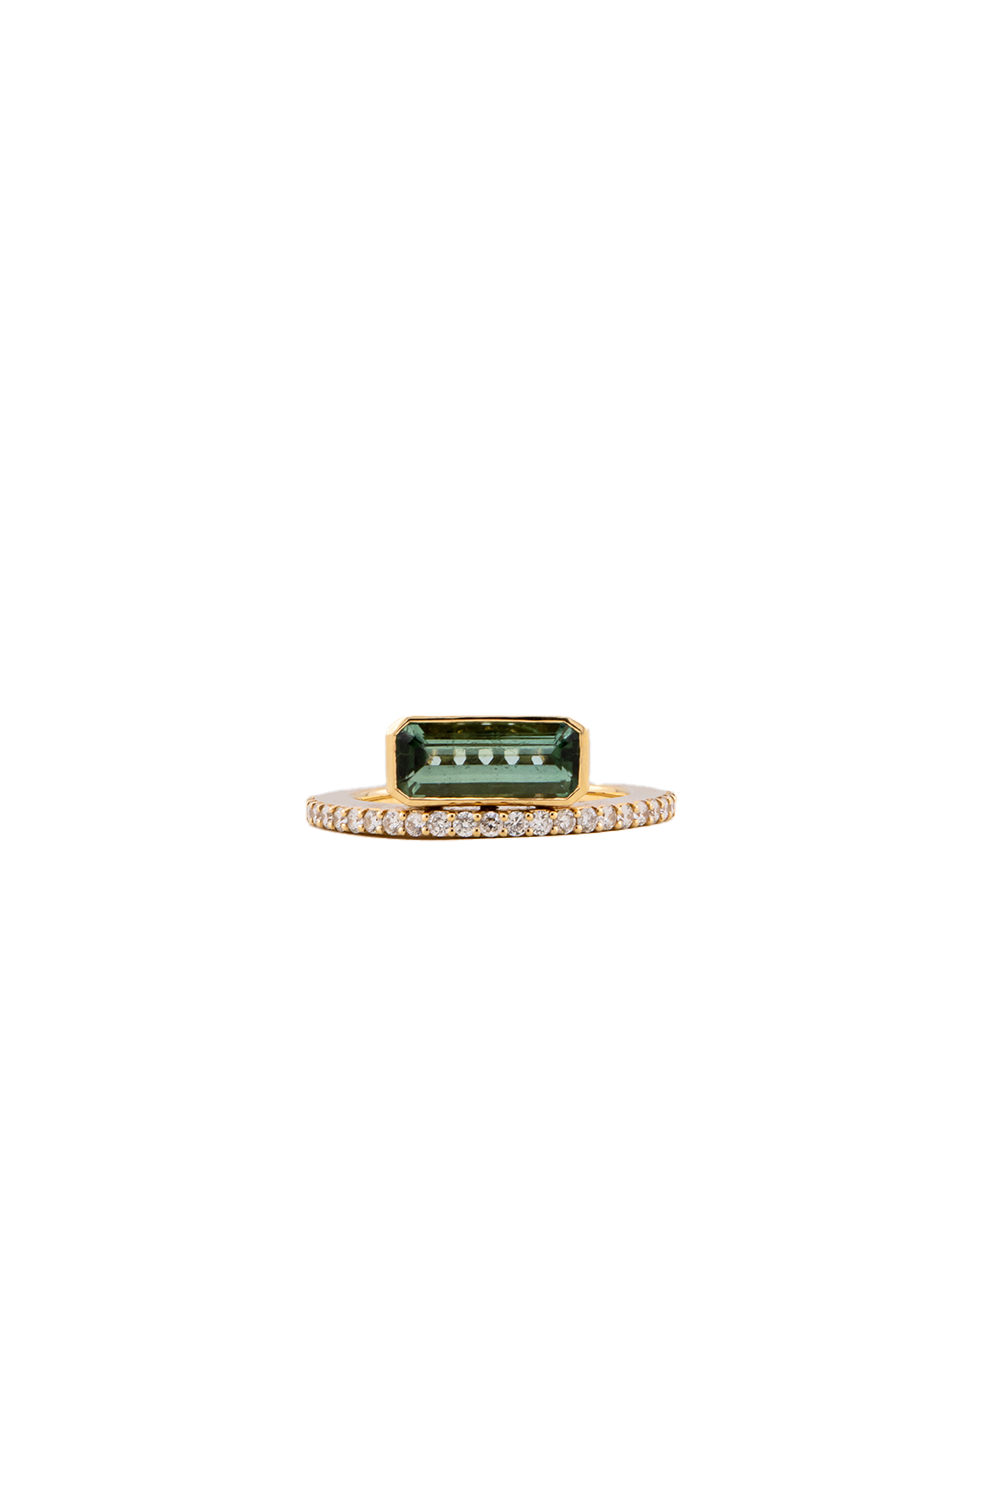 Emerald Cut Tourmaline Diamond Band Size 7 Ring